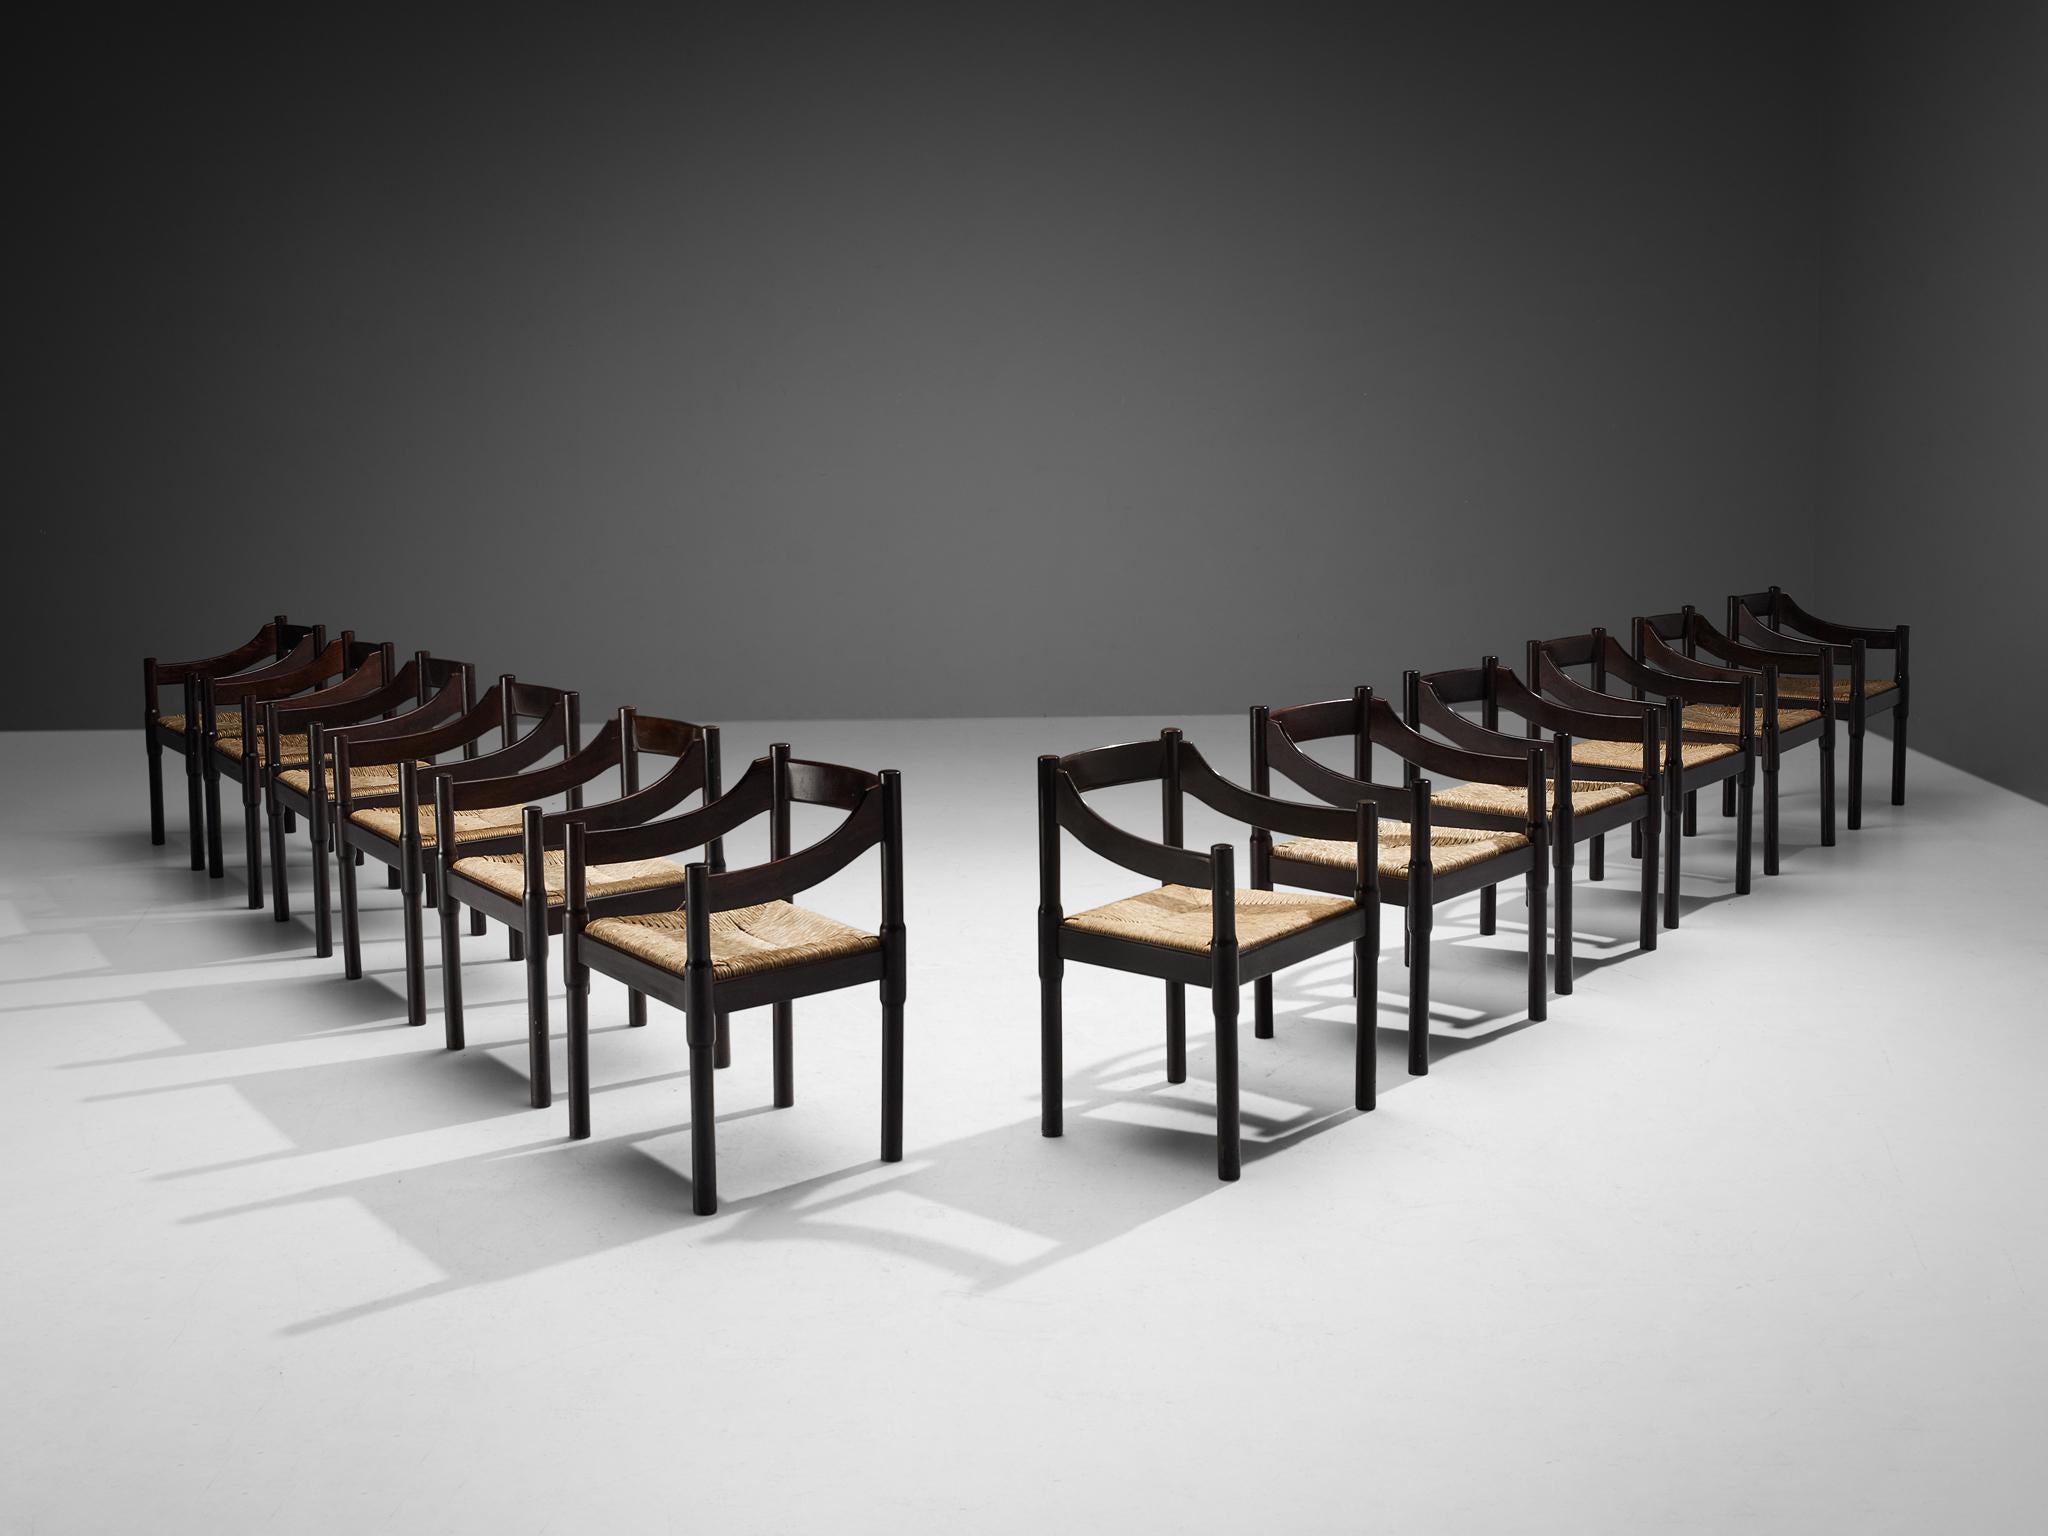 Vico Magistretti, ensemble de douze chaises de salle à manger modèle 'Carimate', hêtre teinté, osier paille, Italie, conçu vers 1960.

La chaise 